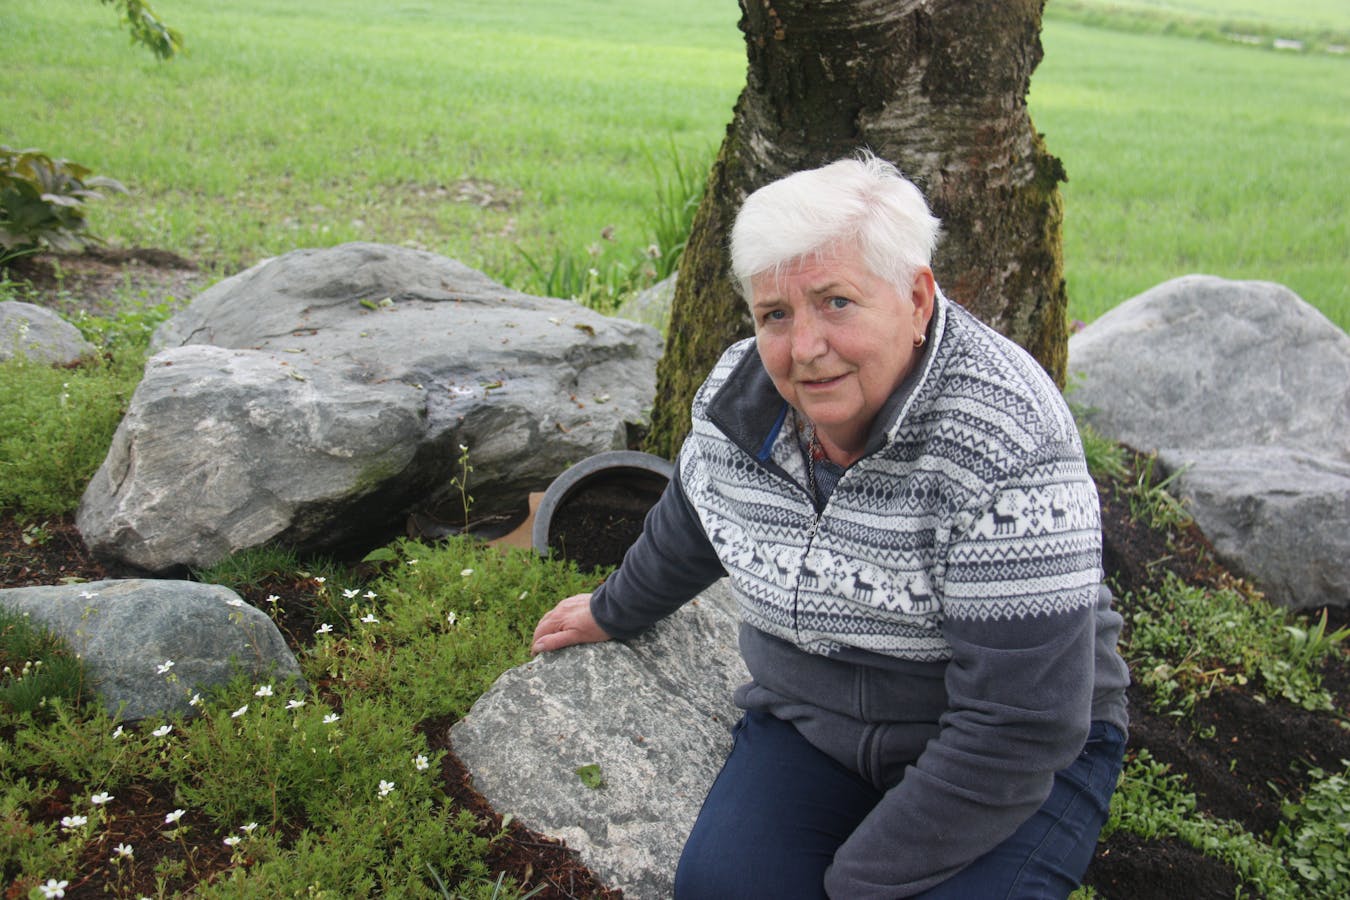 Ei gamal trerot under sin stor stein er bustad for mange av humlene i hagen til Joveig Håheim i Etne.
Foto: Irene Mæland Haraldsen